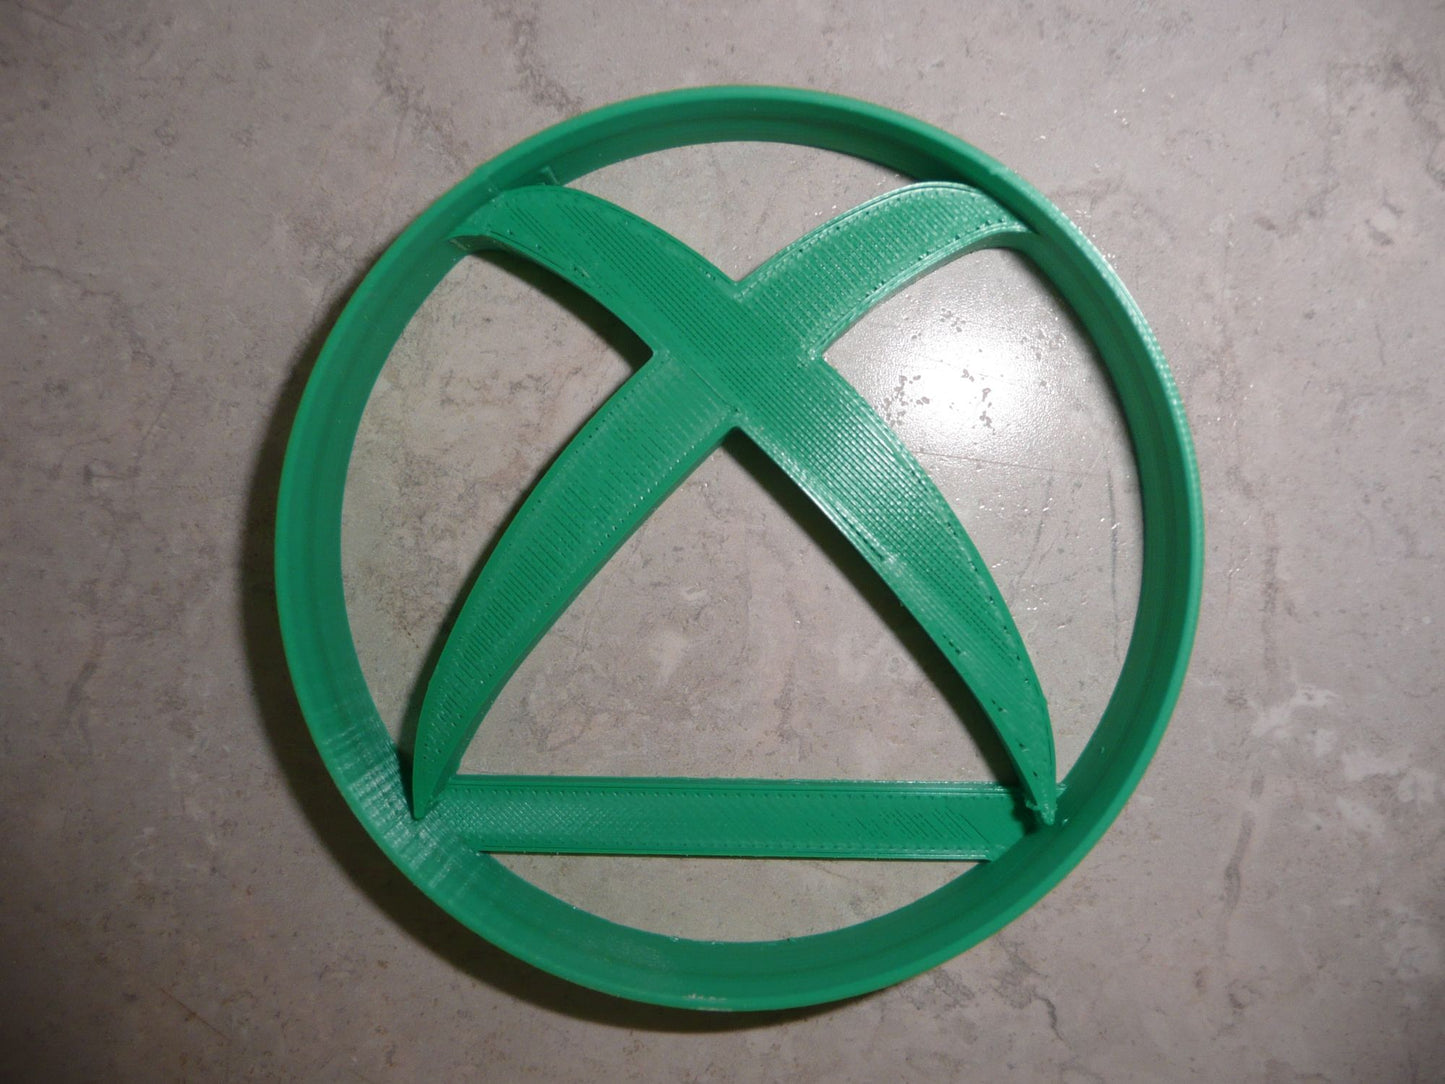 6x Xbox Game Symbol Fondant Cutter Cupcake Topper 1.75 IN USA FD4410